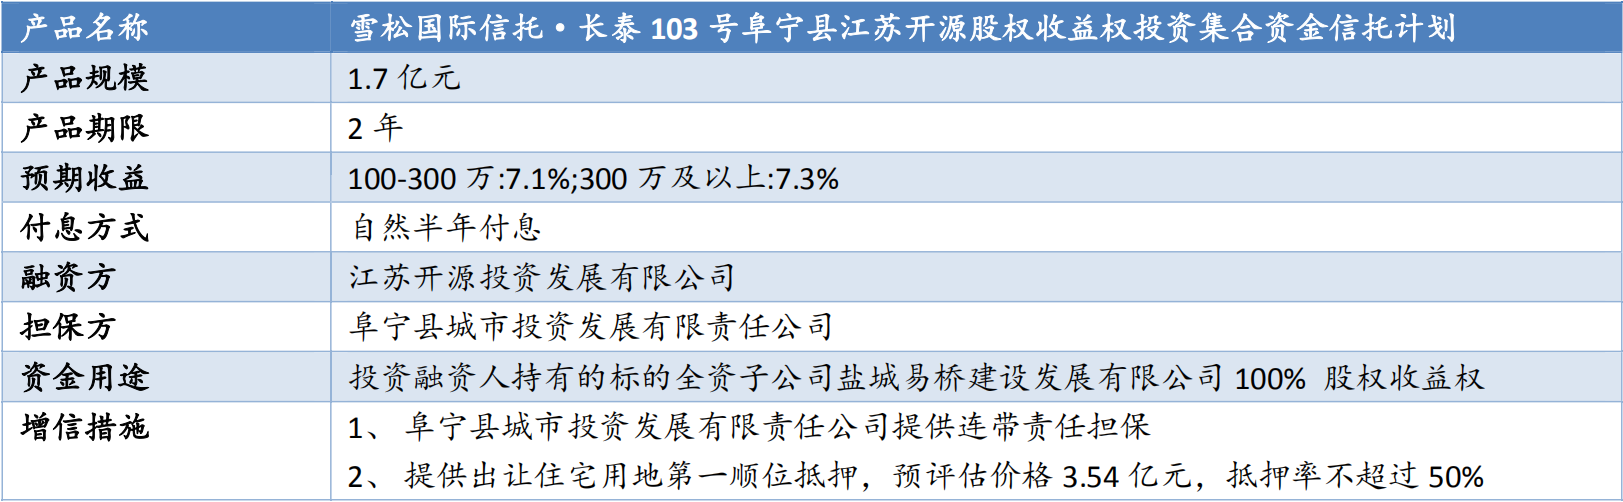 雪松国际信托-长泰103号江苏阜宁开源集合资金信托计划评估